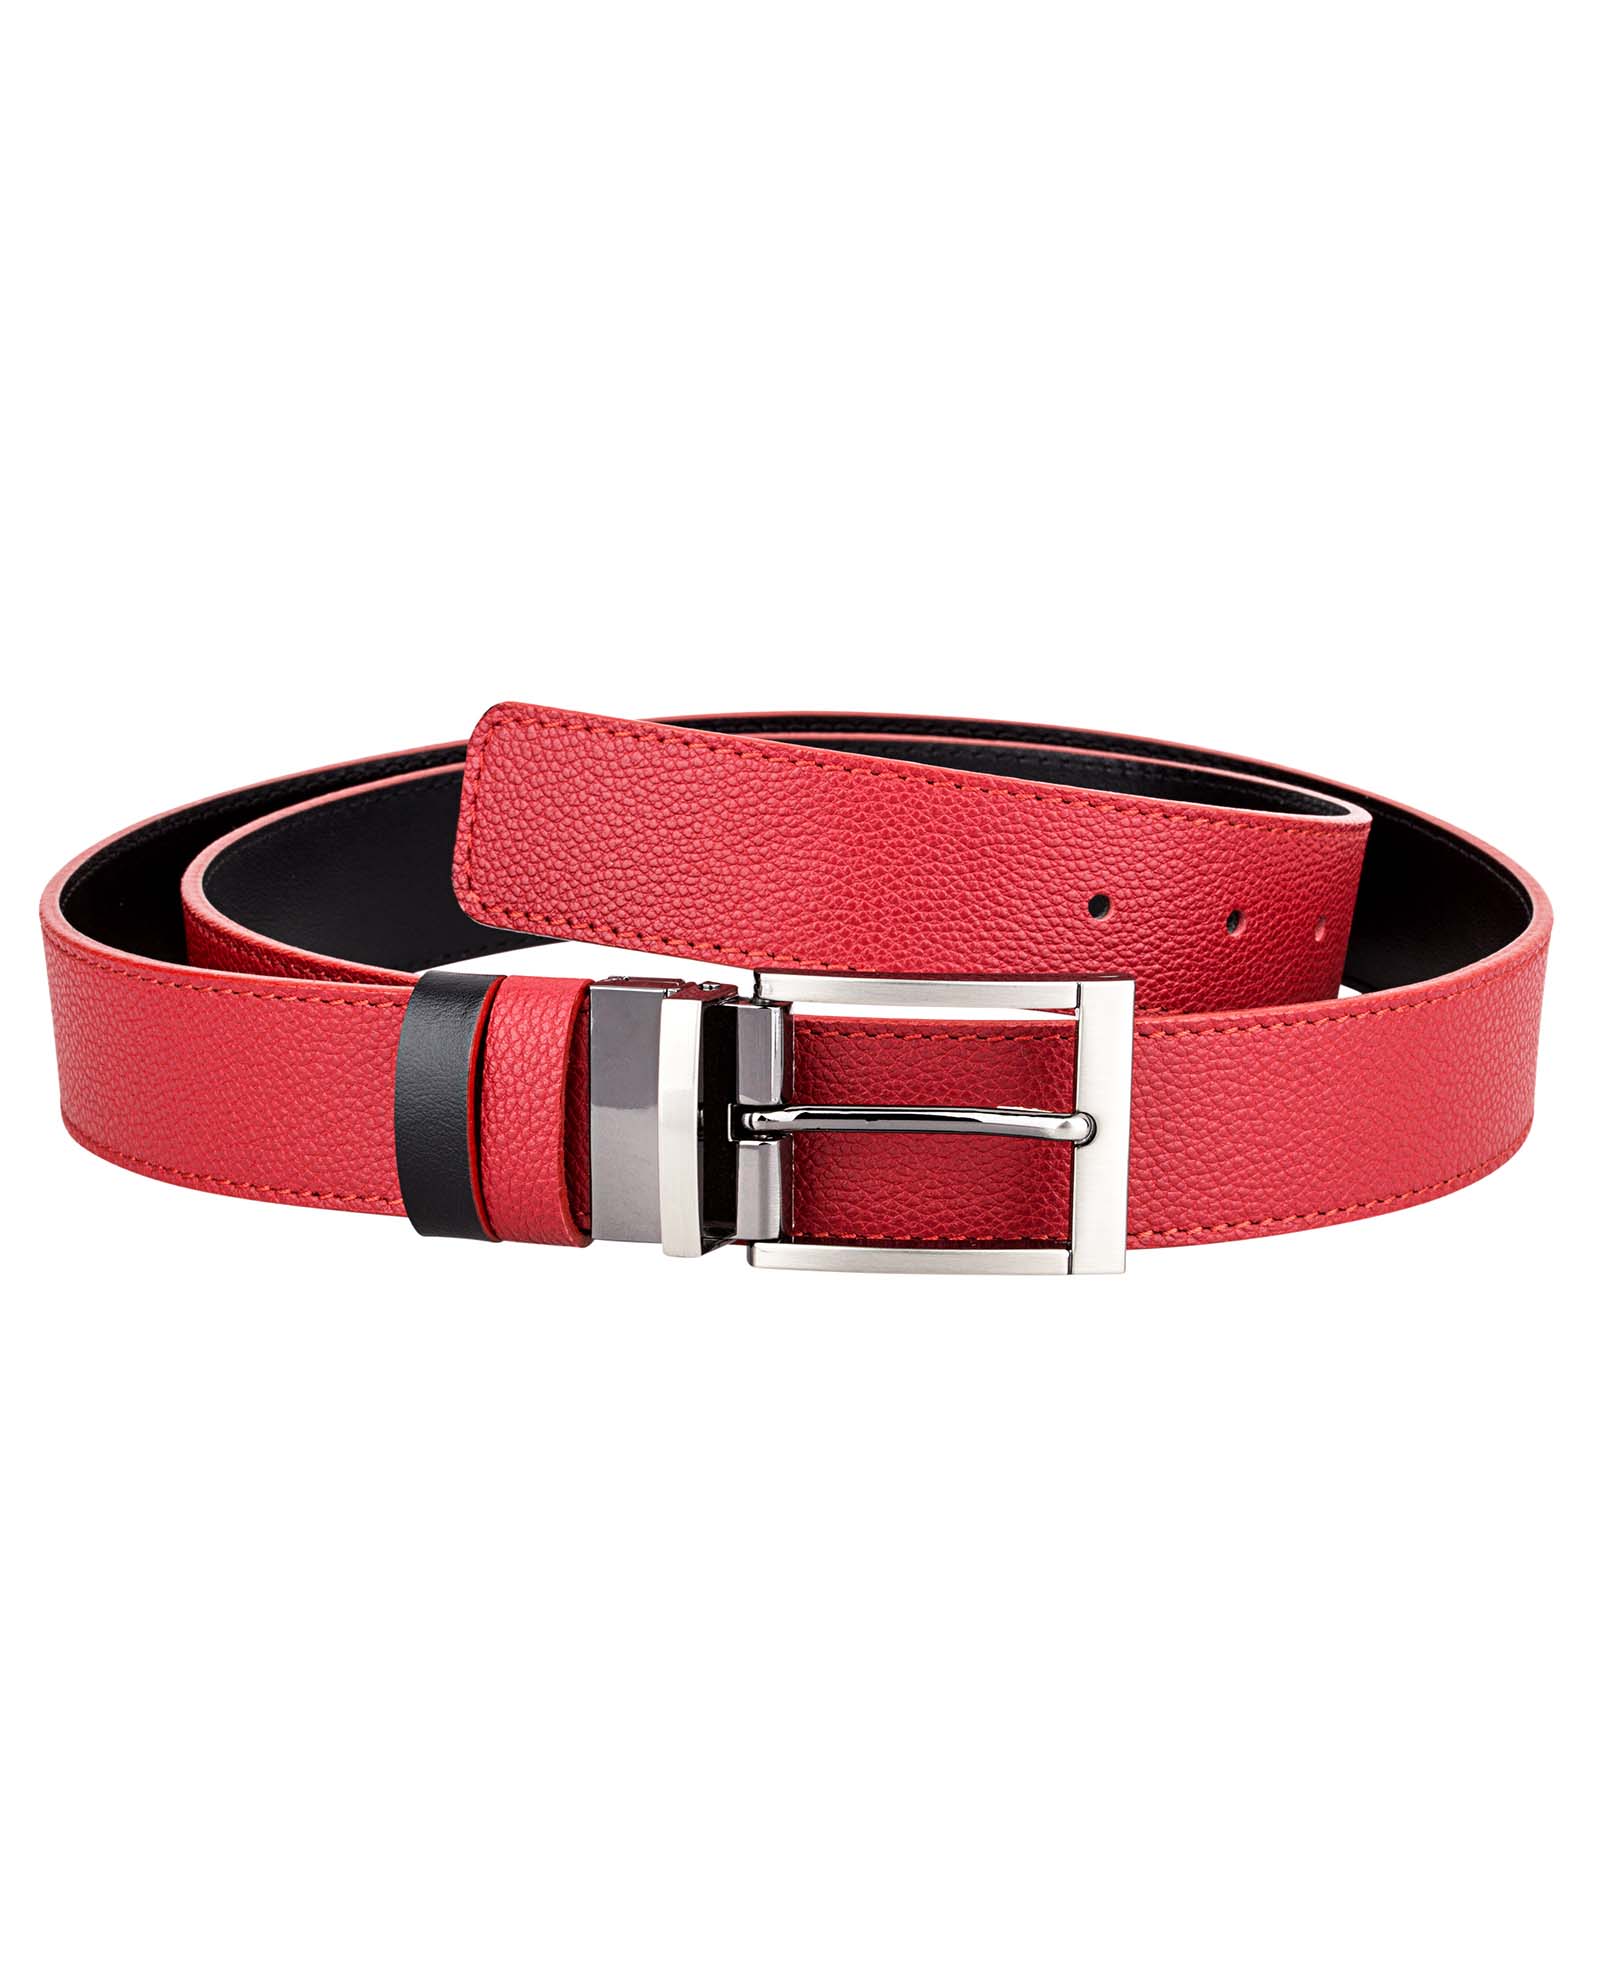 Buy Reversible Red Leather Belt - Italian Cowskin - LeatherBeltsOnline.com